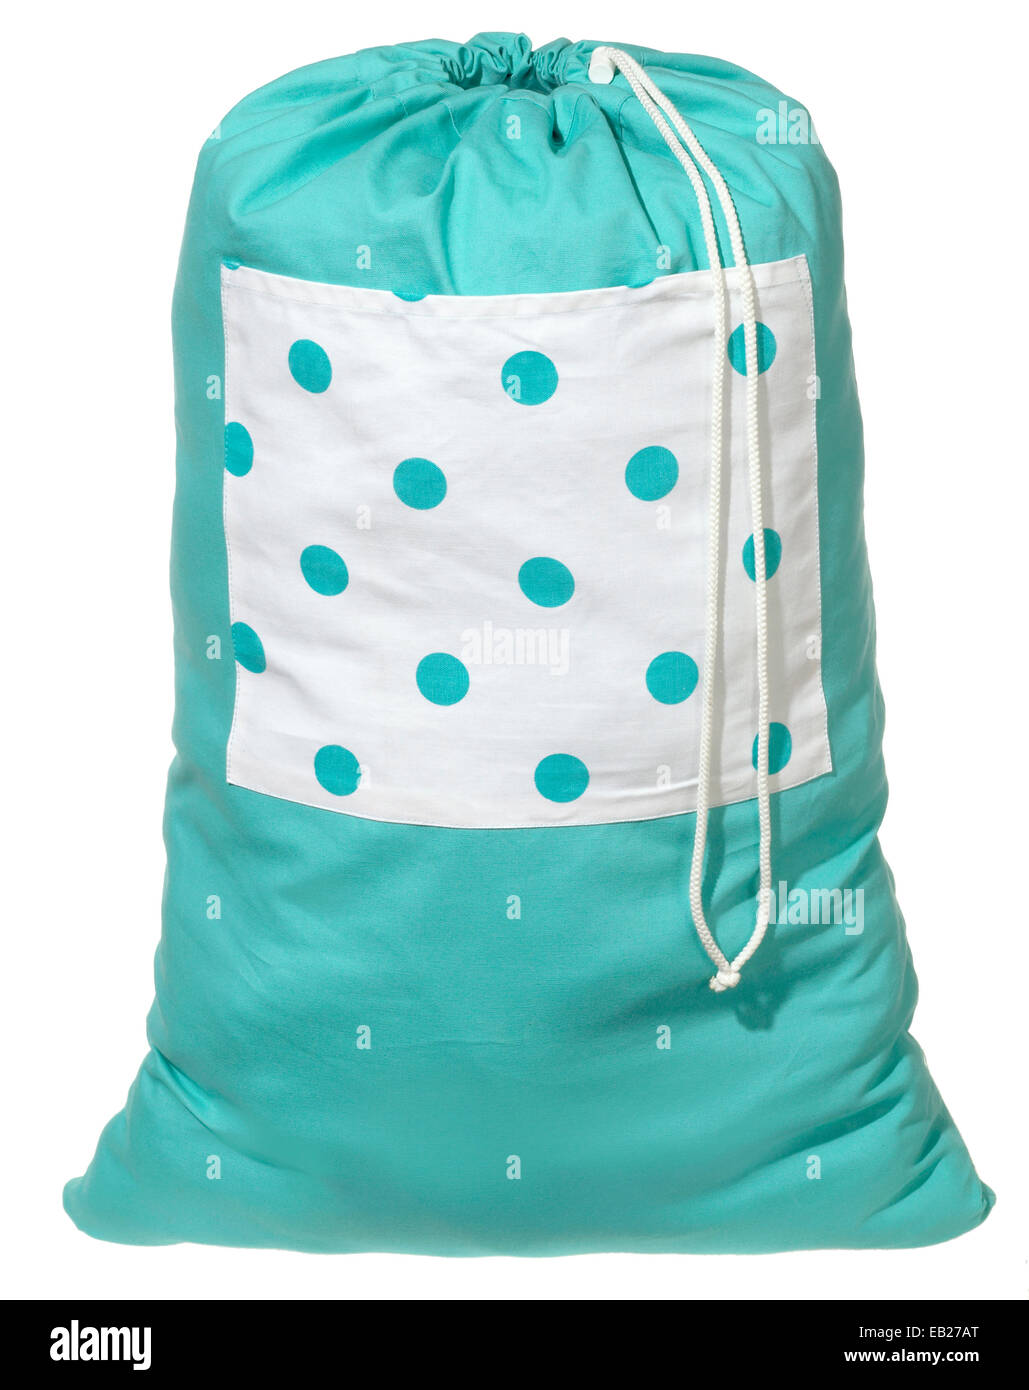 cloth polka dot laundry bag Stock Photo